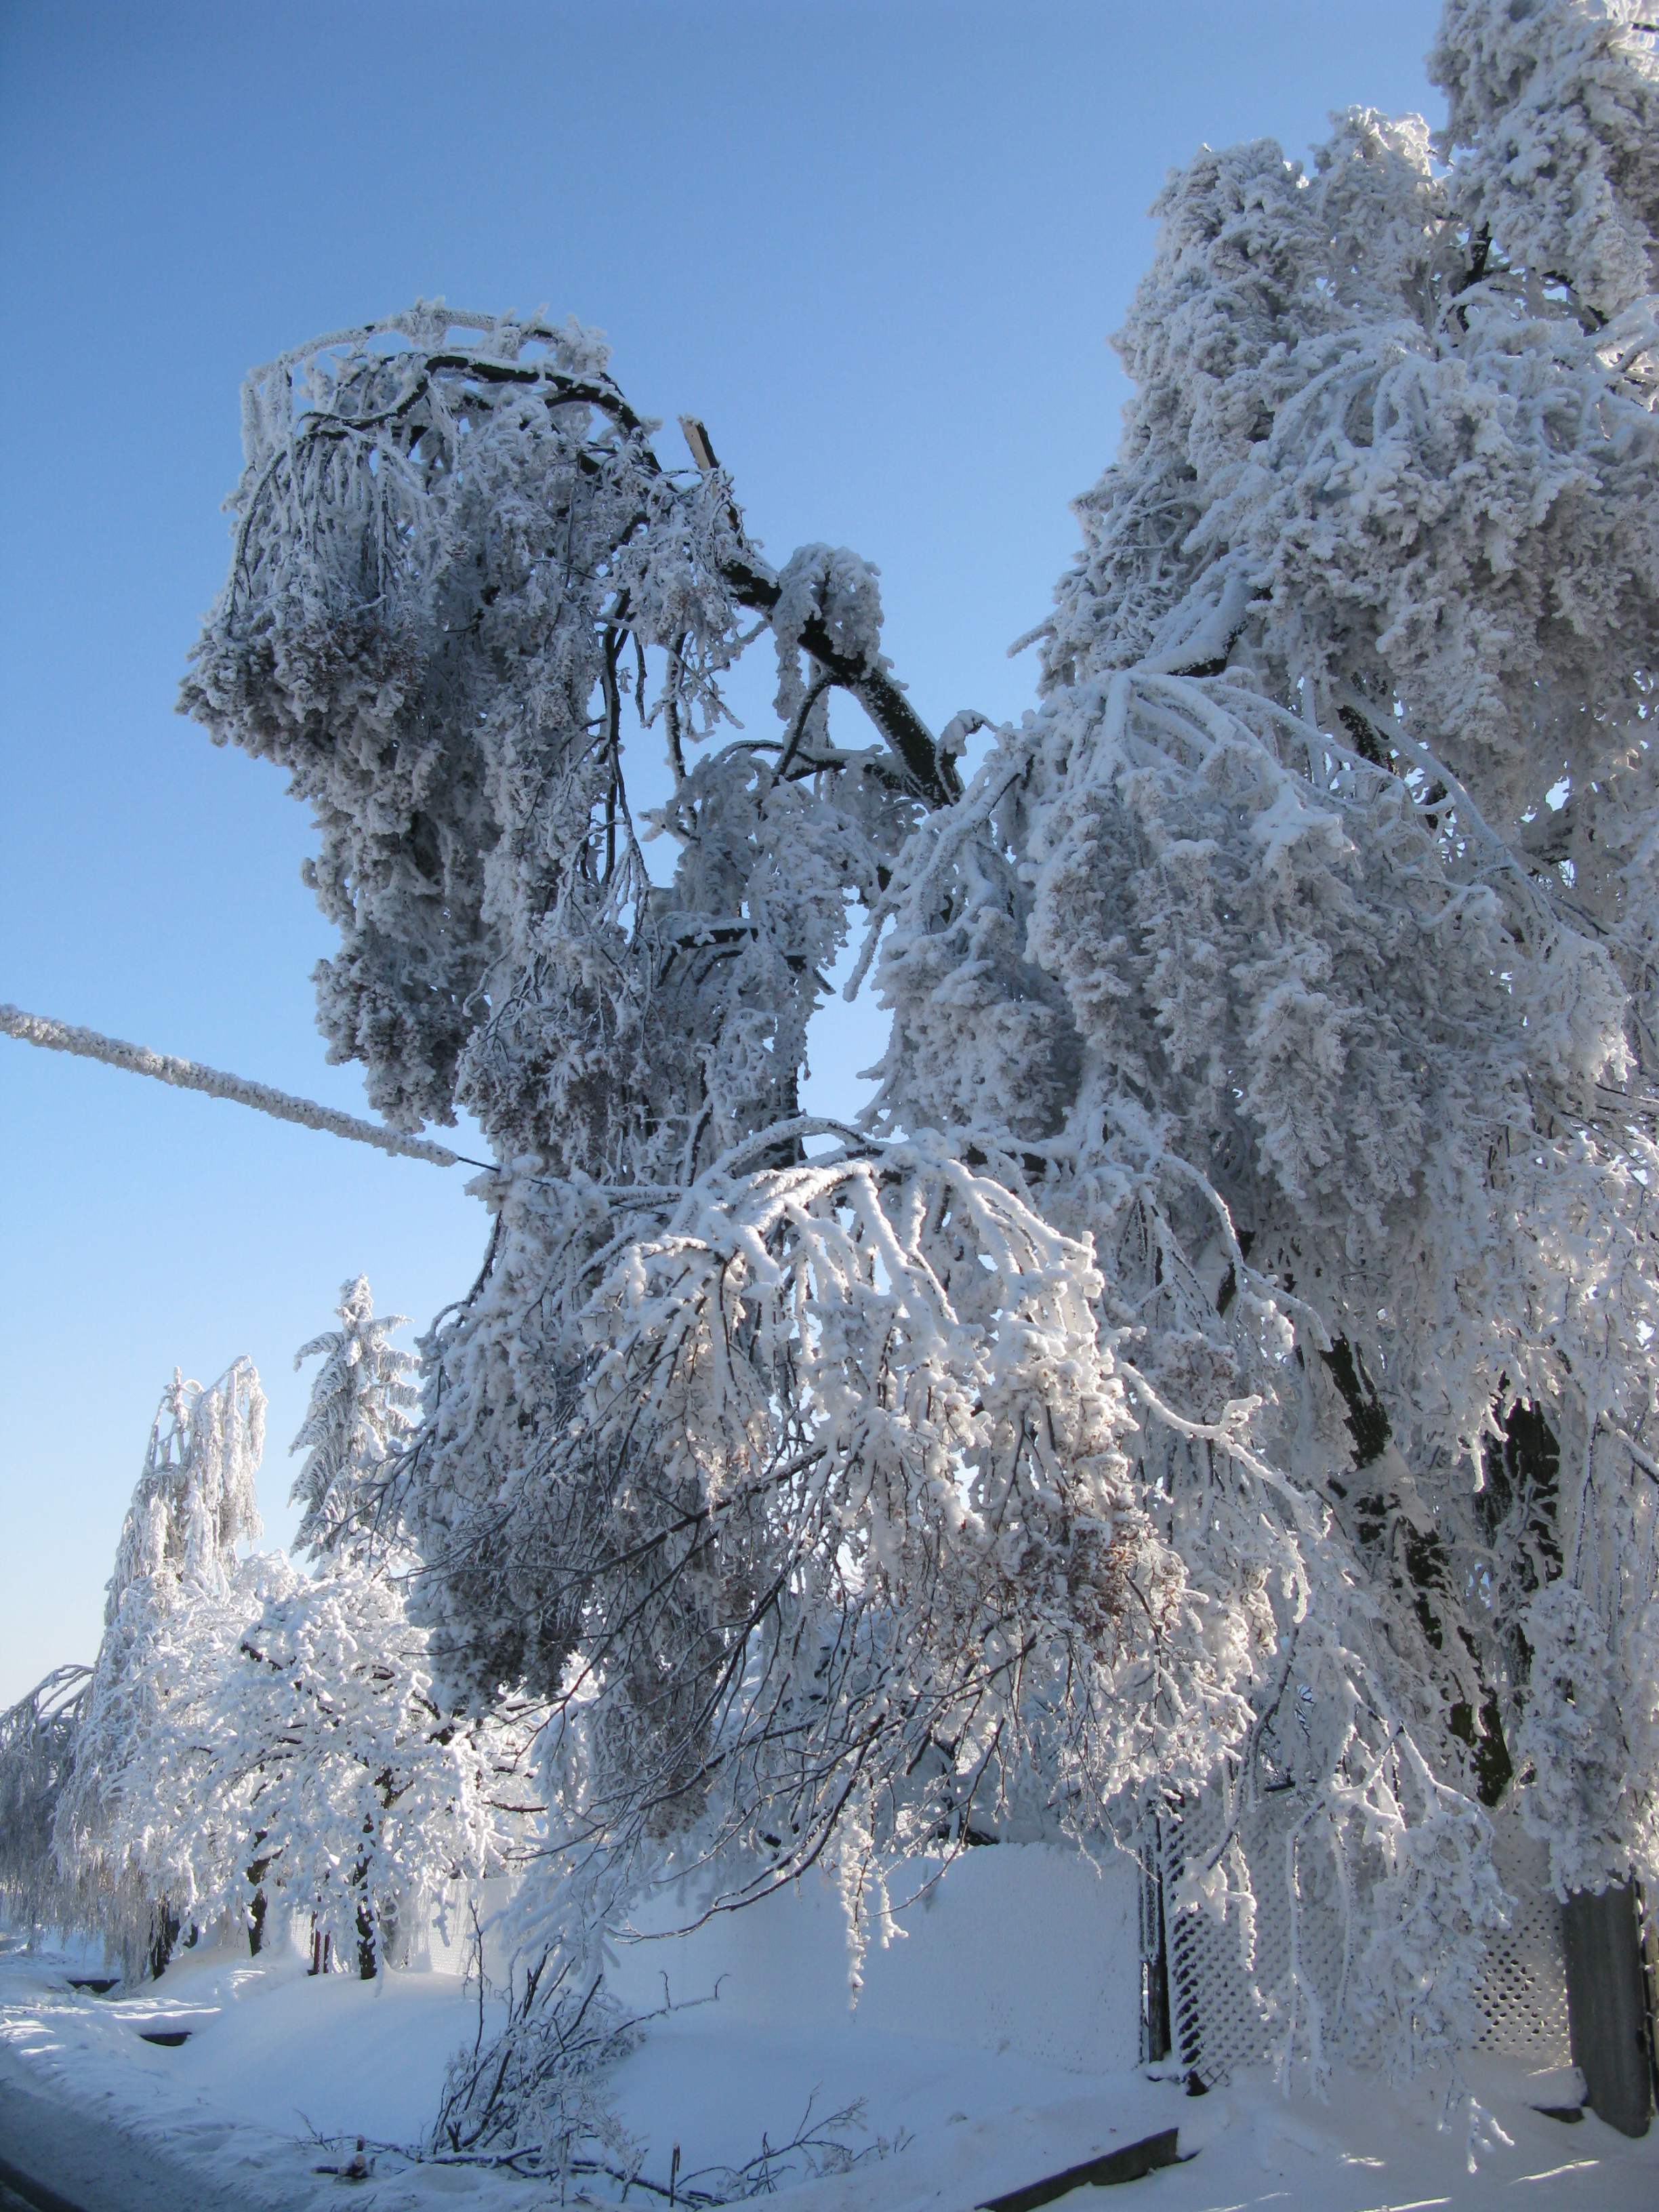 Drzewa łamiące się pod ciężarem oblodzonej szadzi i śniegu (Pogórze Wielickie, styczeń 2010) (fot. J. Walawender)